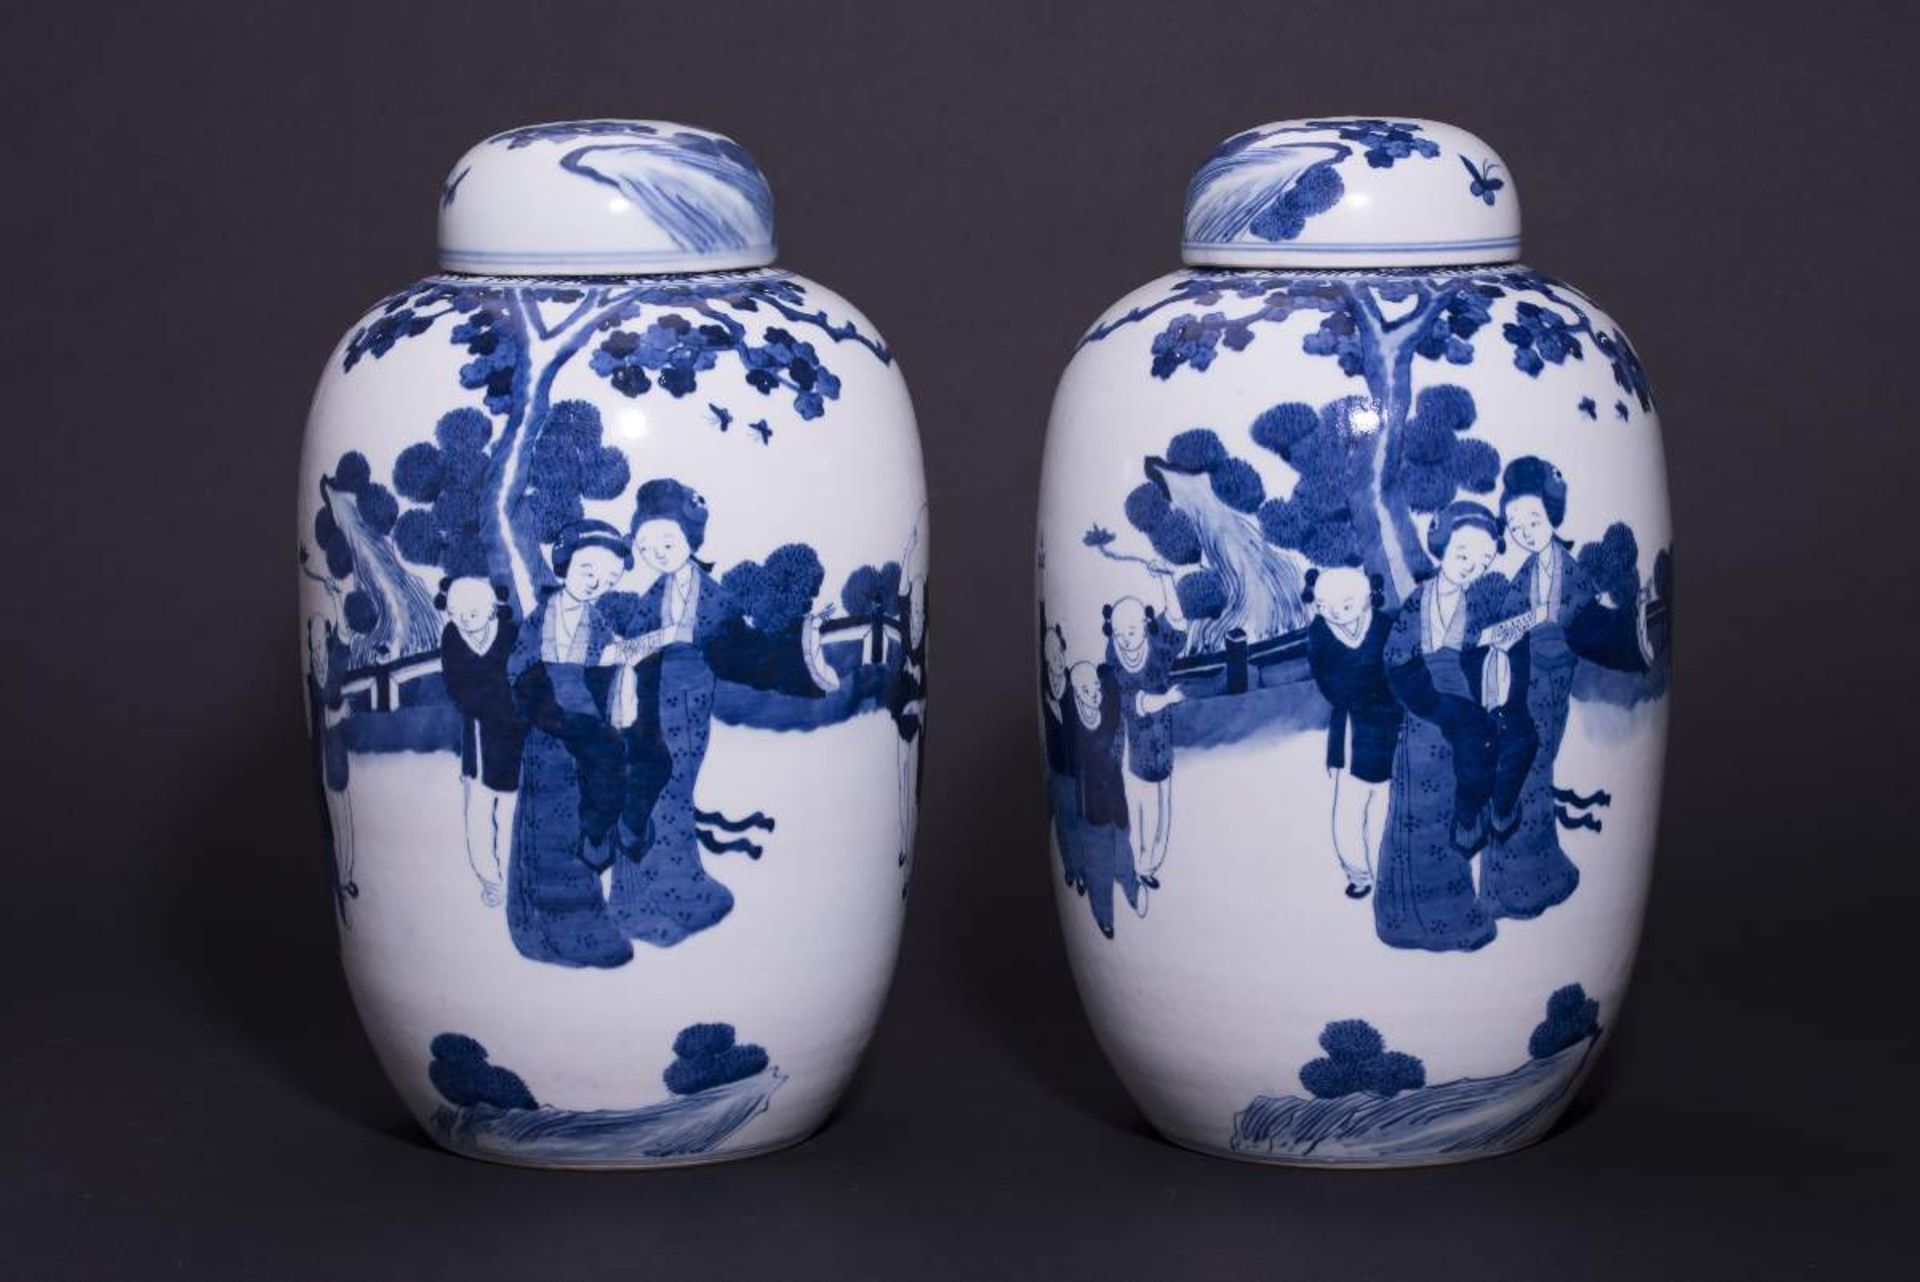 PAAR DECKELVASEN MIT GARTENSZENENBlauweißes Porzellan. China, Qing-Dynastie, 19. Jh.Mit Bodenmarke